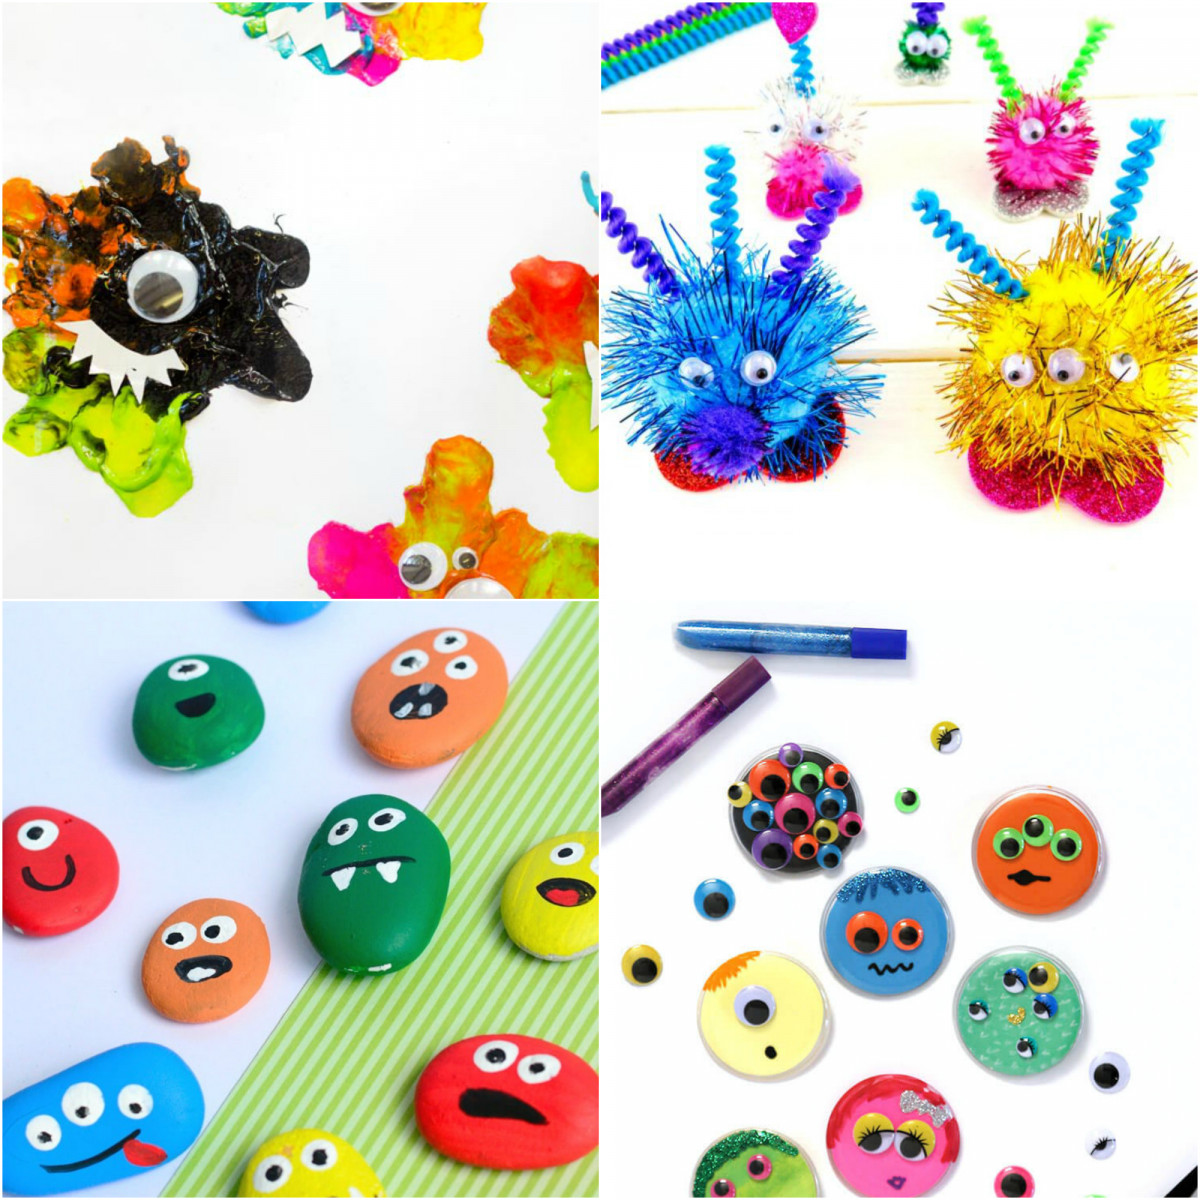 Alea's Deals 15 Monster Crafts For Kids  